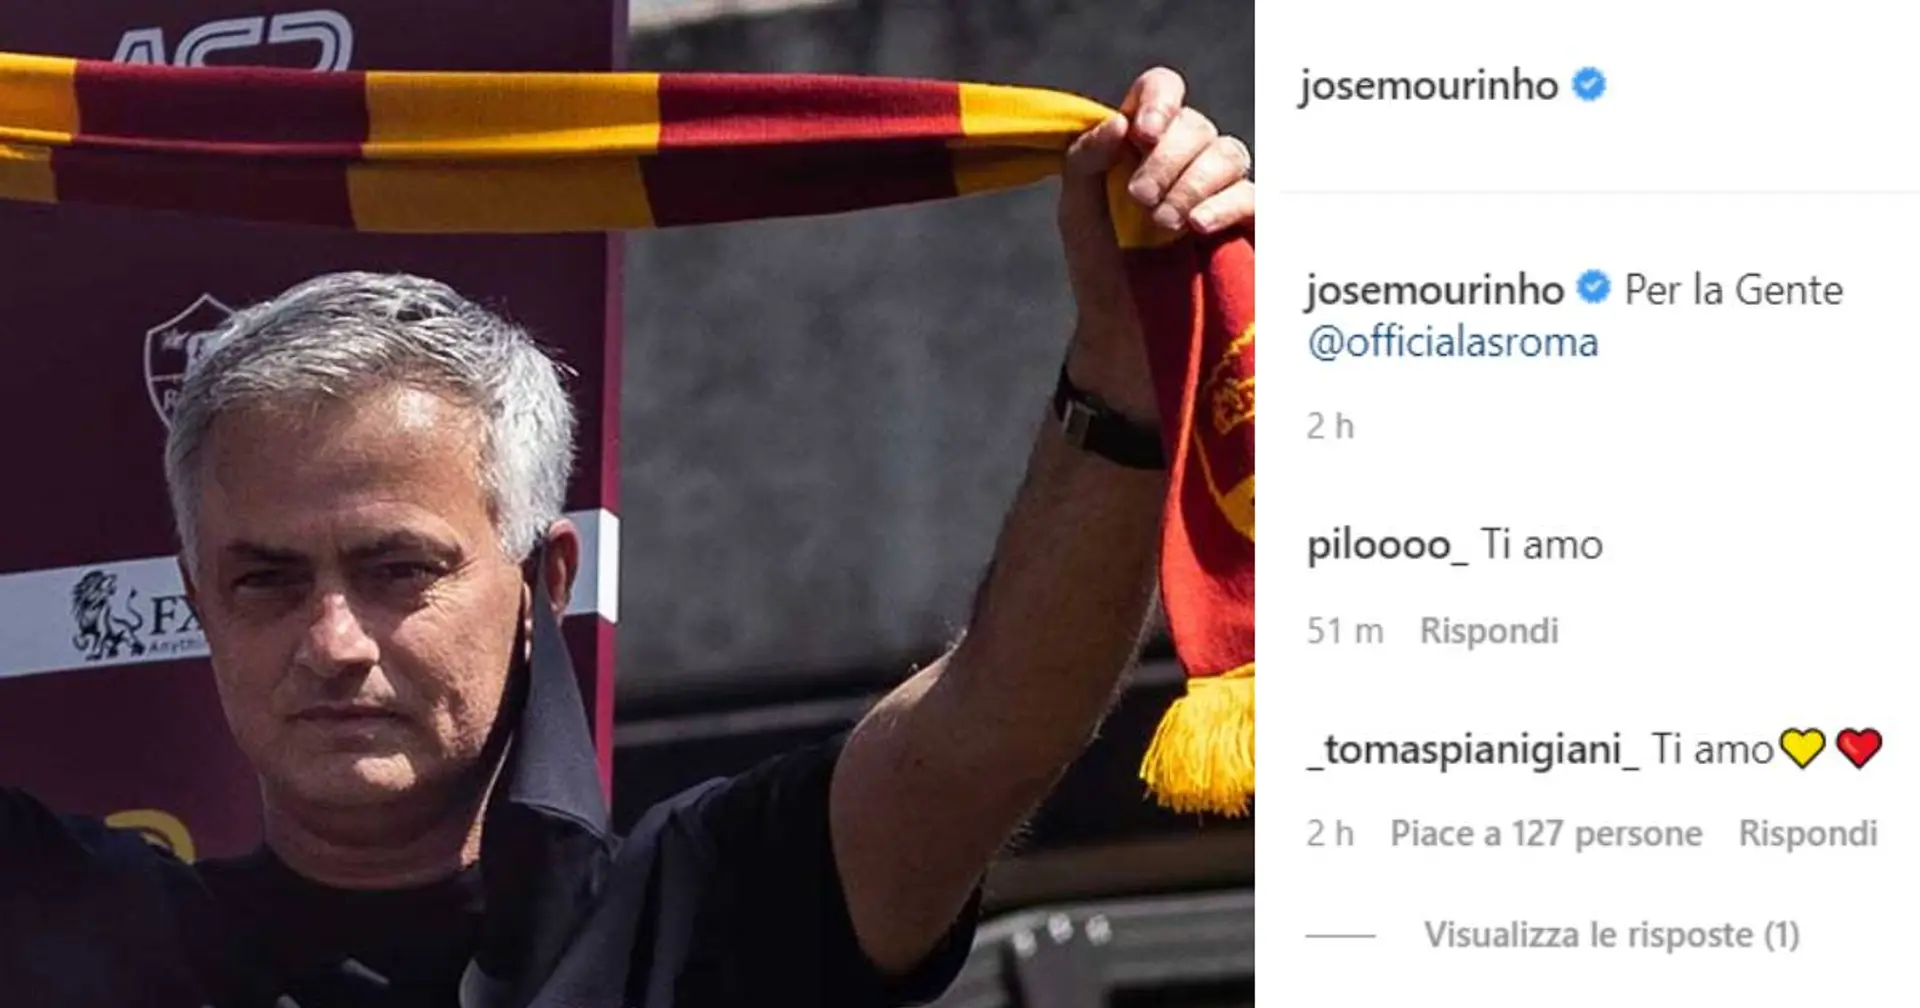 "C’è un popolo alle tue spalle mister", il post di Mourinho scatena i tifosi giallorossi